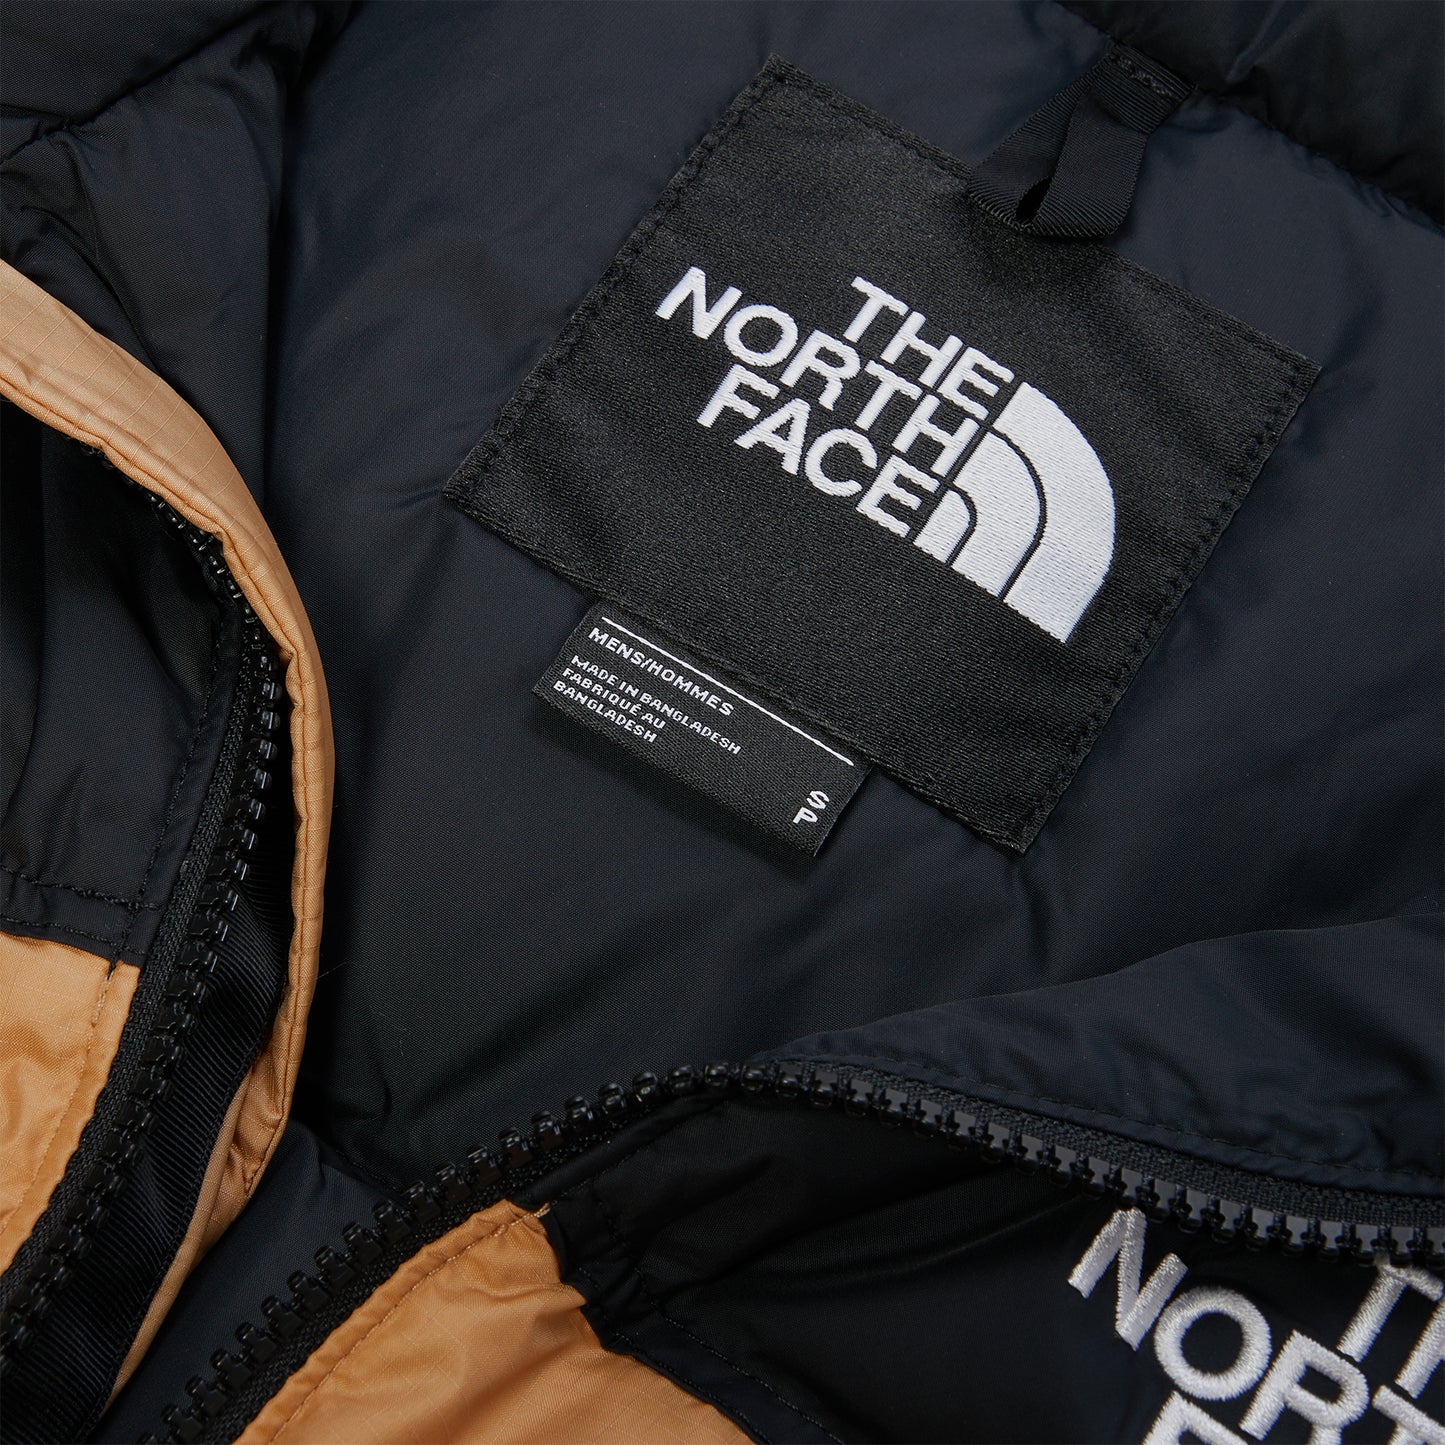 The North Face 1996 Retro Nuptse Vest (Almond Butter)